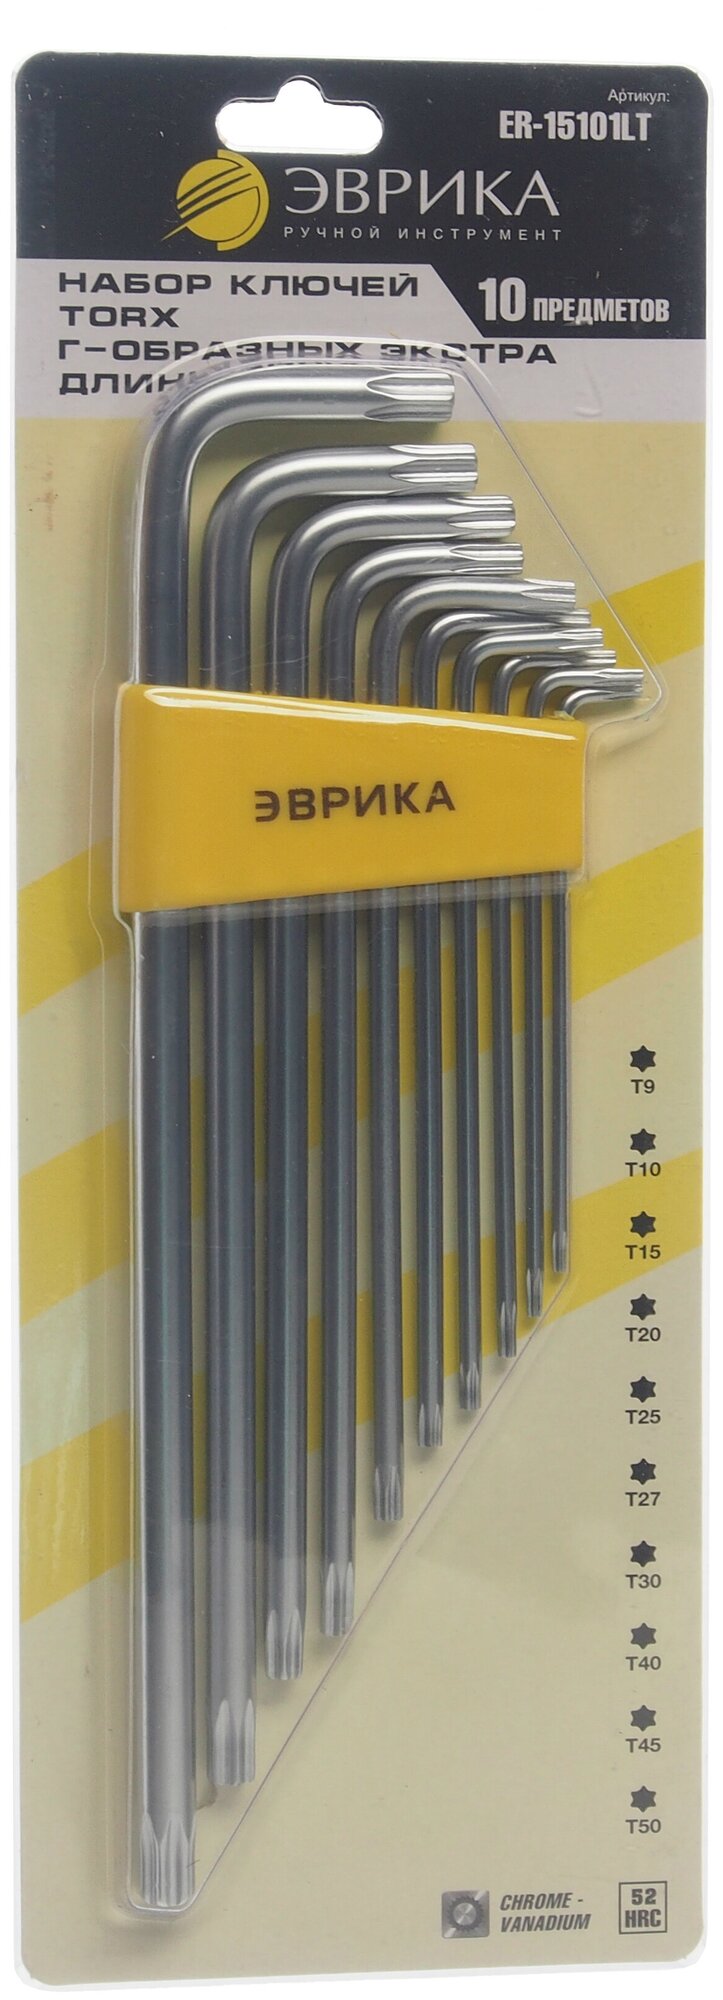 Набор ключей TORX T9-Т50 Г-образных удлиненных 10 предметов эврика ER-15101LT